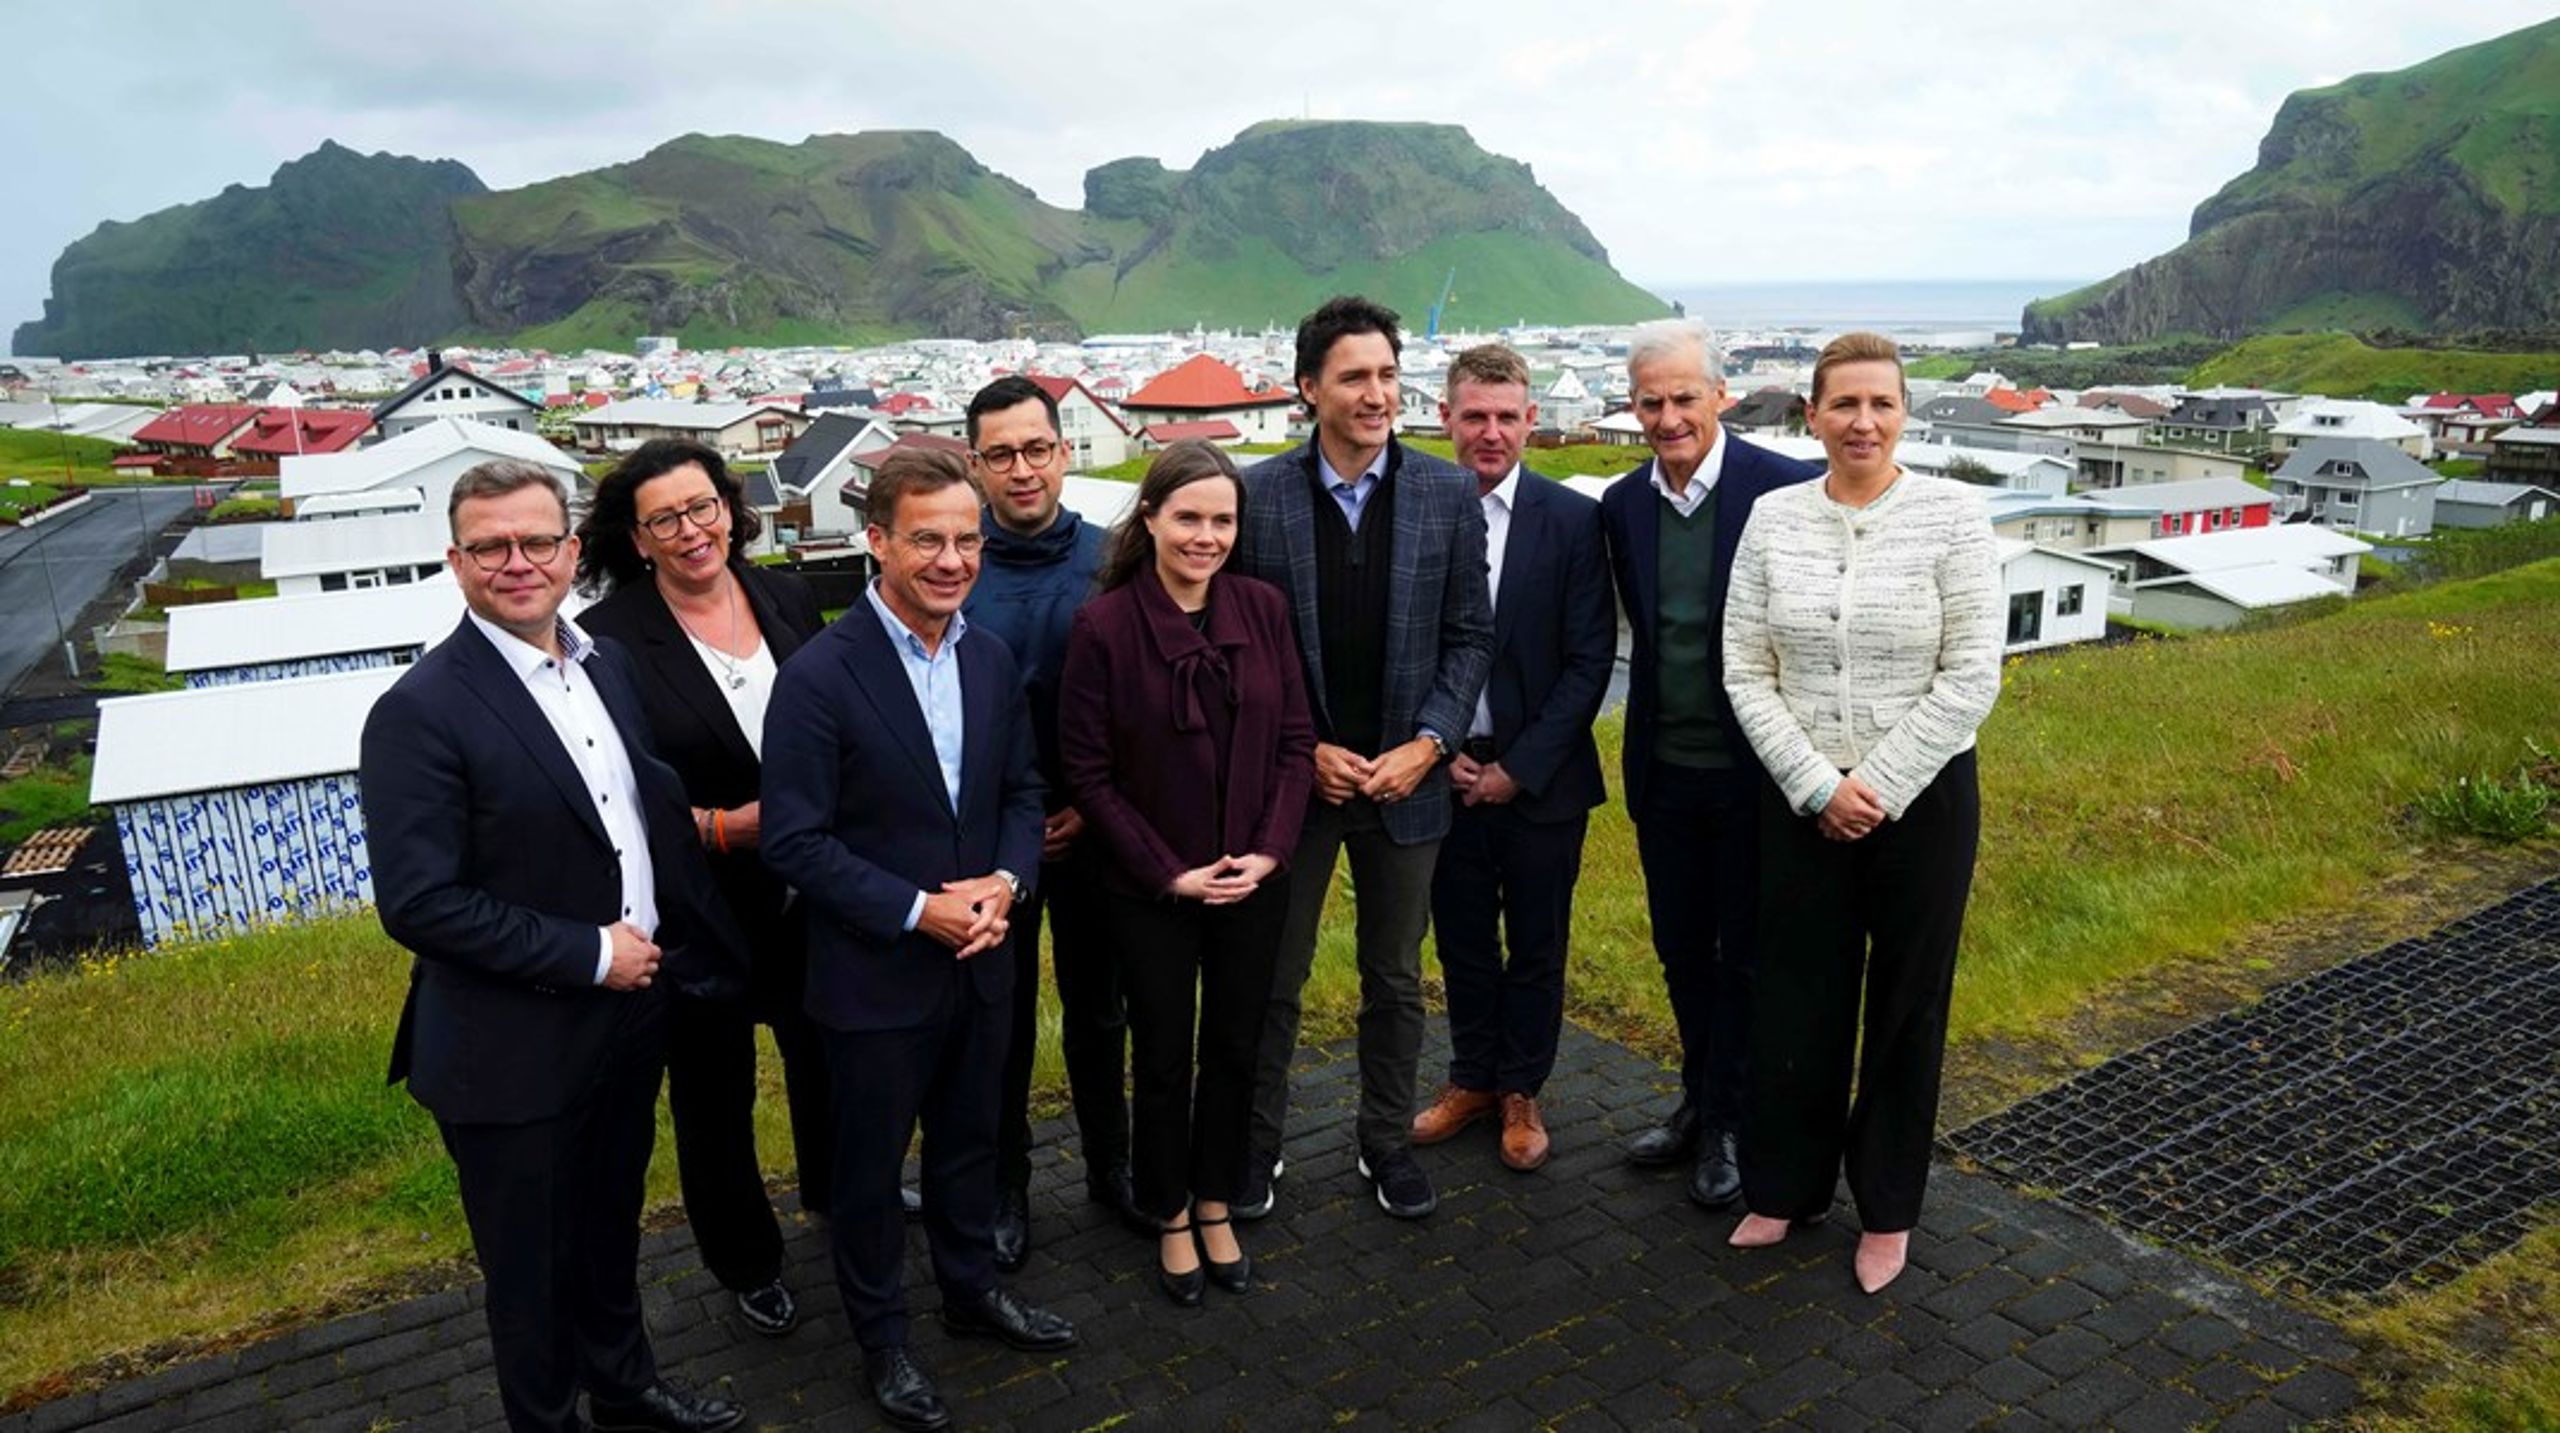 Da Island havde formandsskabet i Nordisk Ministerråd i 2023, var Færøerne, Grønland og Åland inviteret til sommerens topmøde. Det bliver de ikke i år, hvor Sverige kun har inviteret Danmark, Finland, Norge og Island til Stockholm.&nbsp;